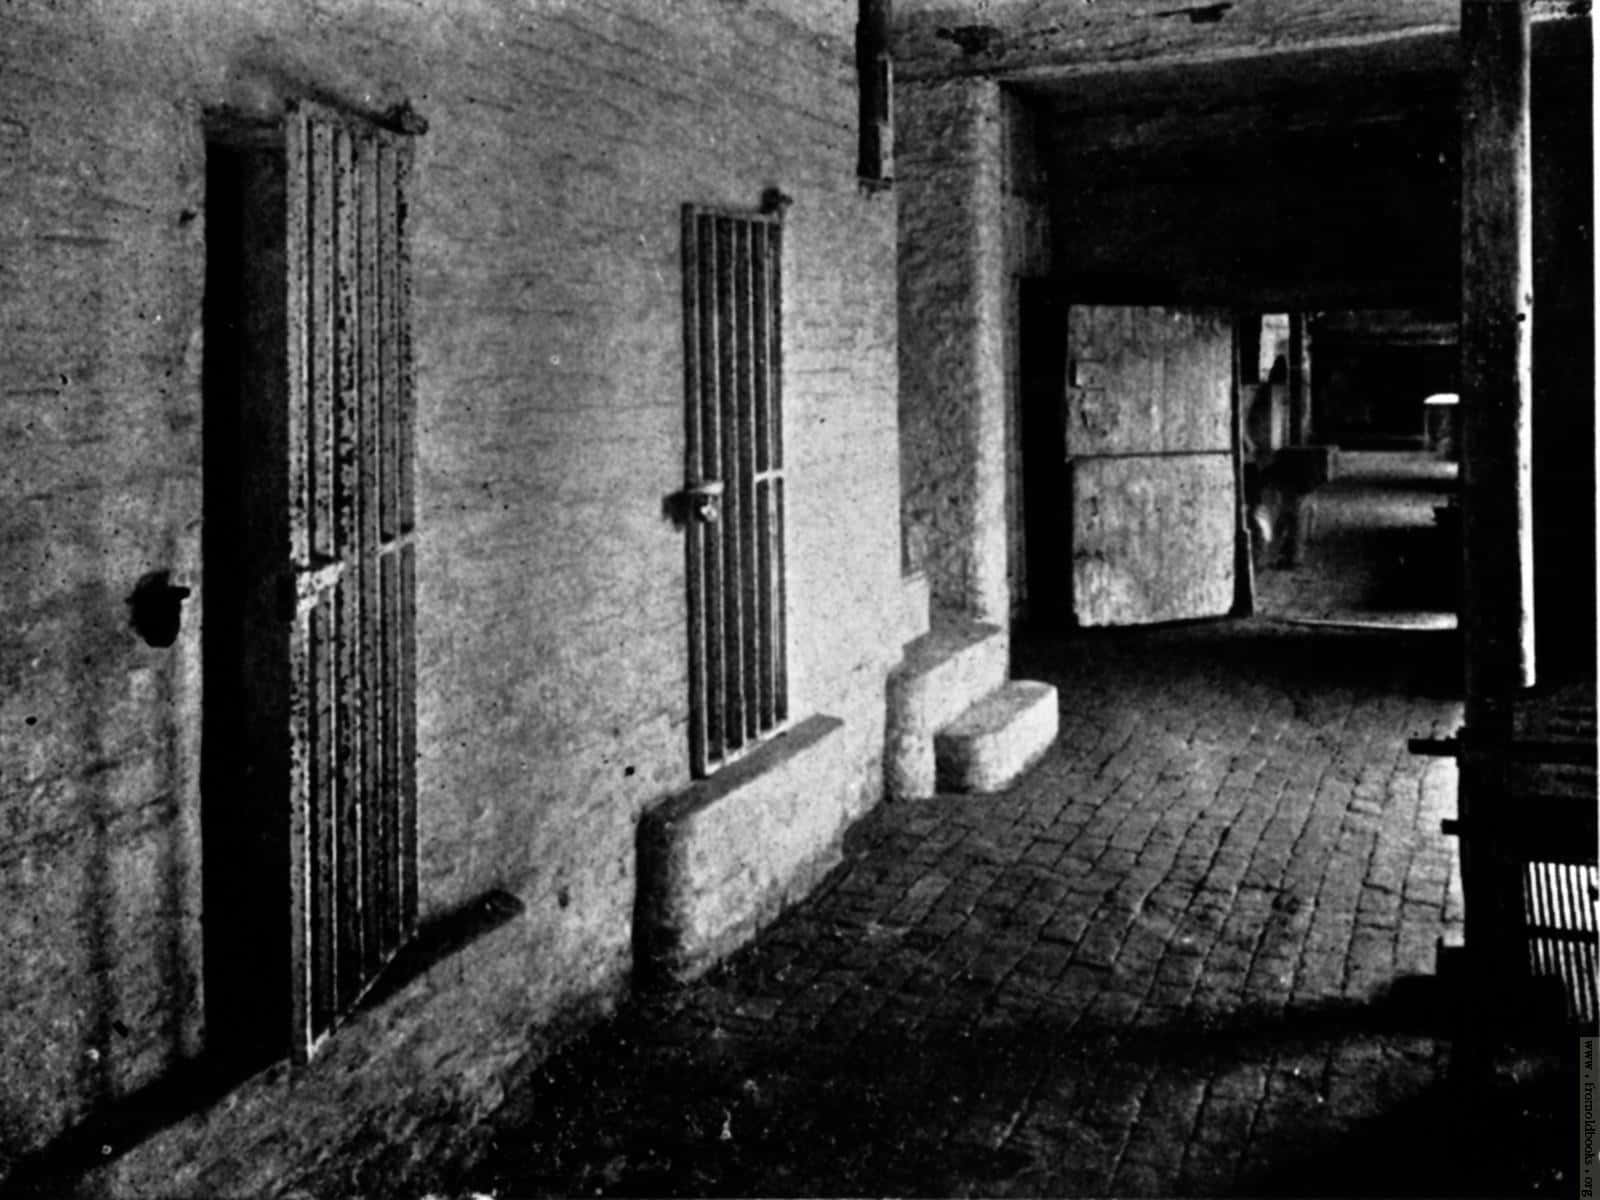 Etsort-hvidt Billede Af En Fængselsgang.